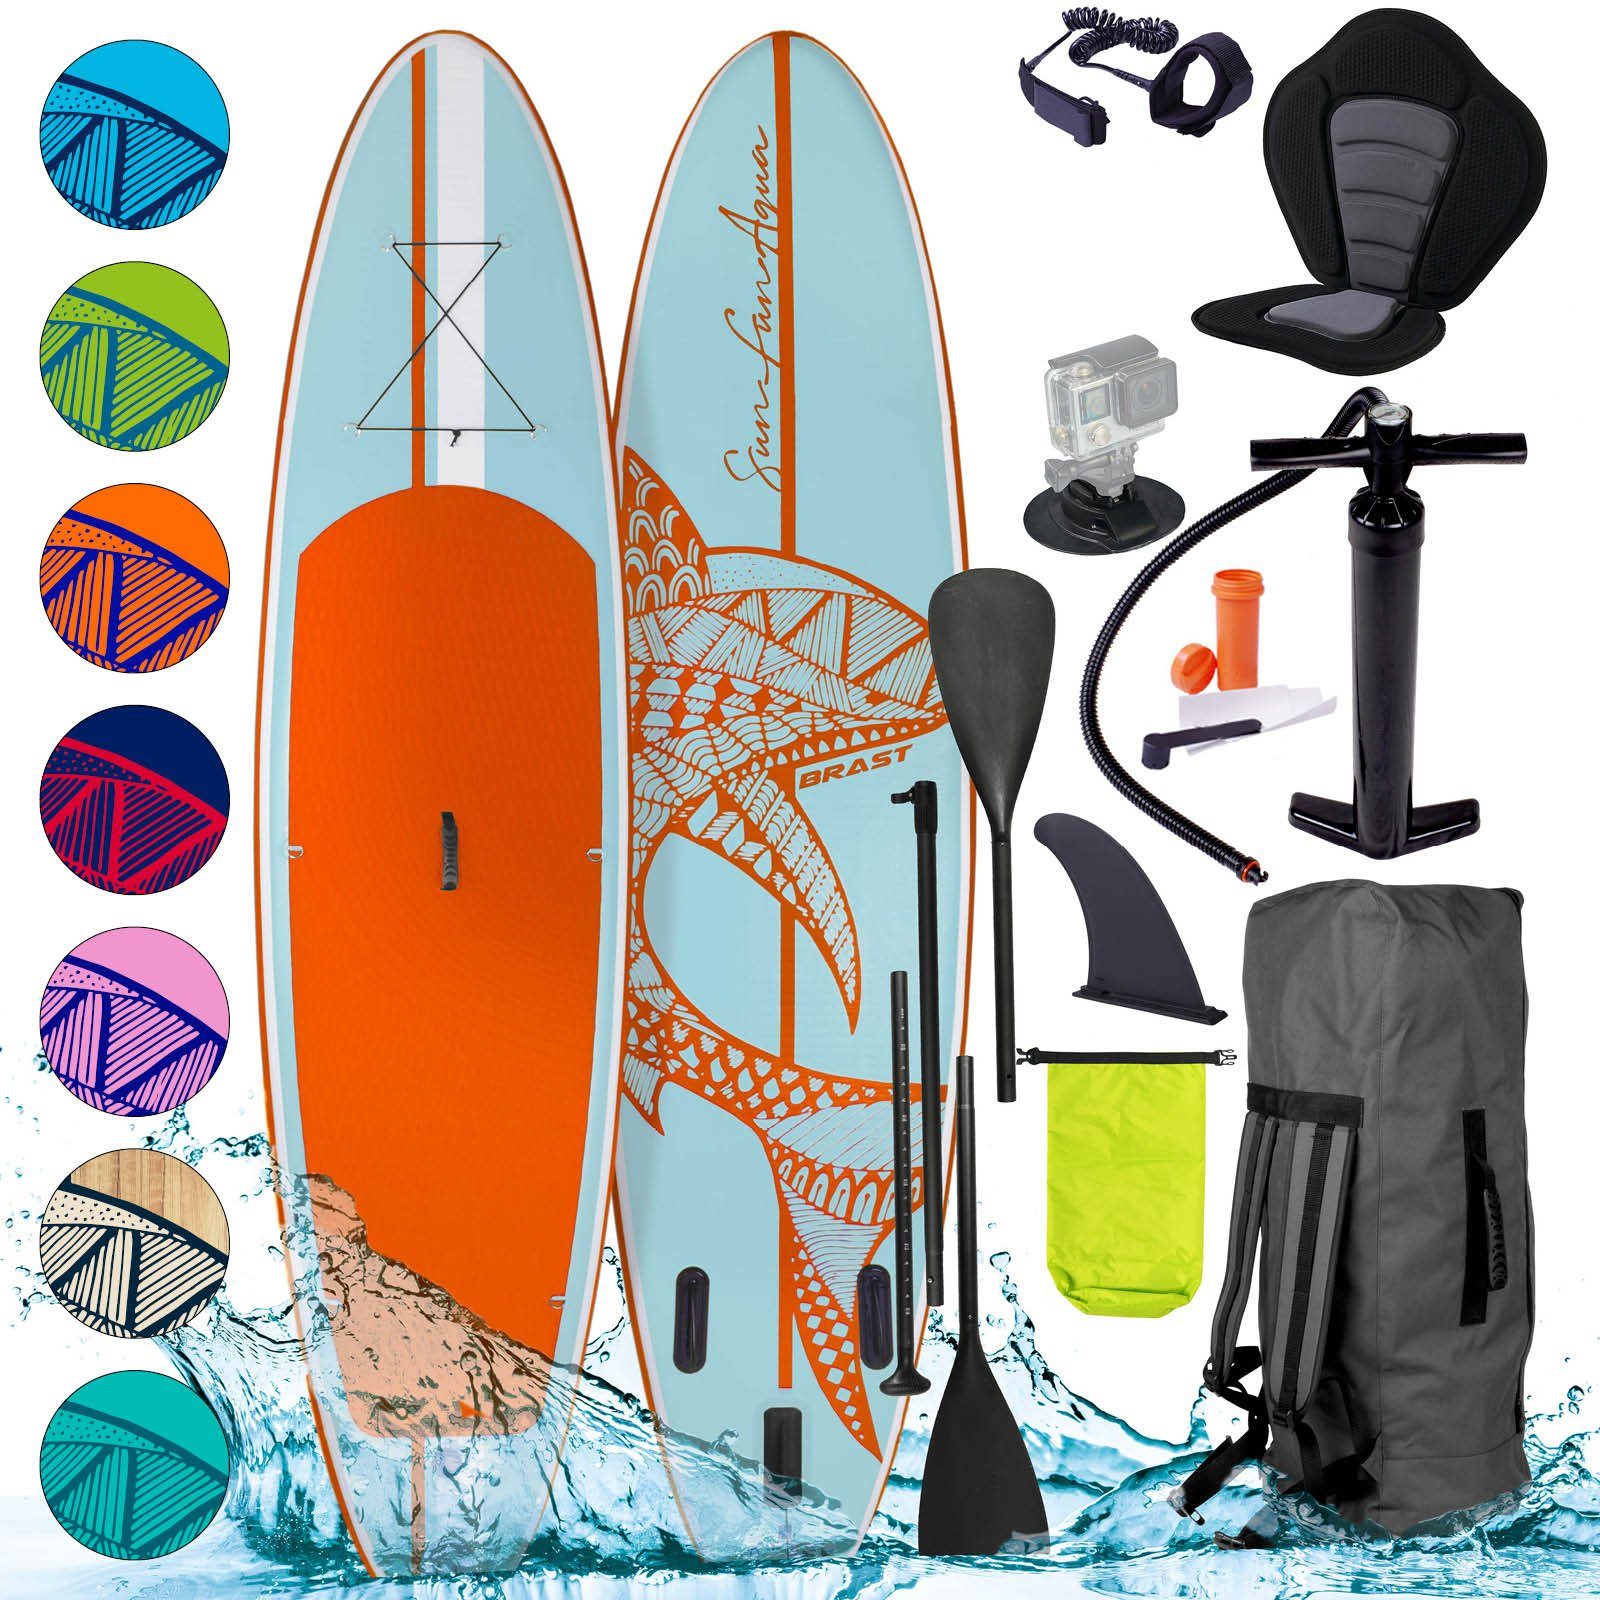 BRAST SUP-Board Shark Aufblasbares Stand up Paddle Set 300-365cm viele Modelle, inkl. Sonderzubehör, (2in1 Paddel Kajak-Sitz 5 Jahre Garantie, Action-Cam-Halterung Fußschlaufe Paddel Pumpe Rucksack), Fußschlaufe Paddel Pumpe Rucksack